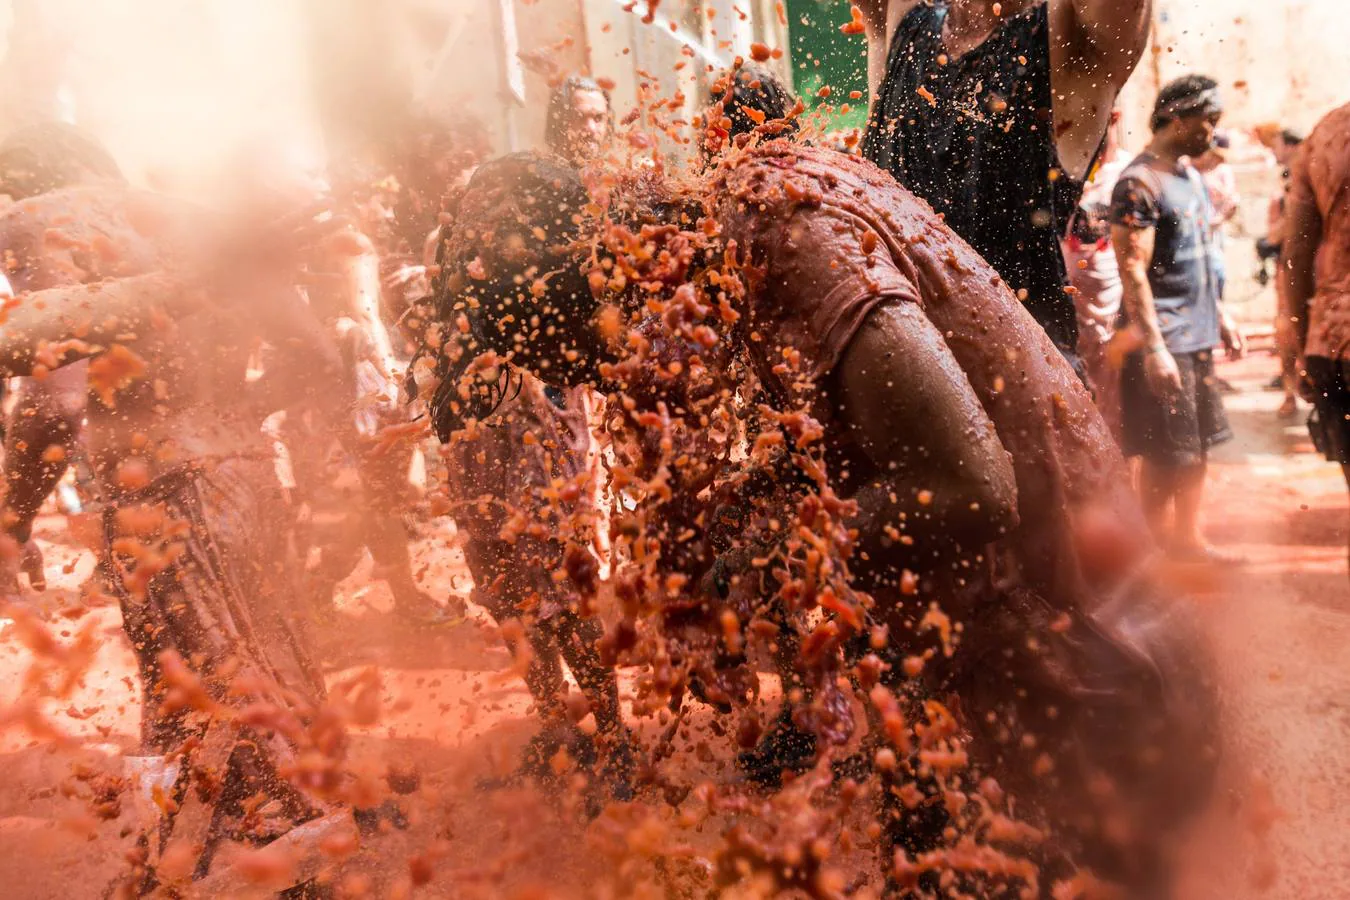 La Tomatina de Buñol lanza 155.000 kilos de tomates supermaduros en una de las fiestas más divertidas del año, conocida como 'Tomato Festival' entre los extranjeros.